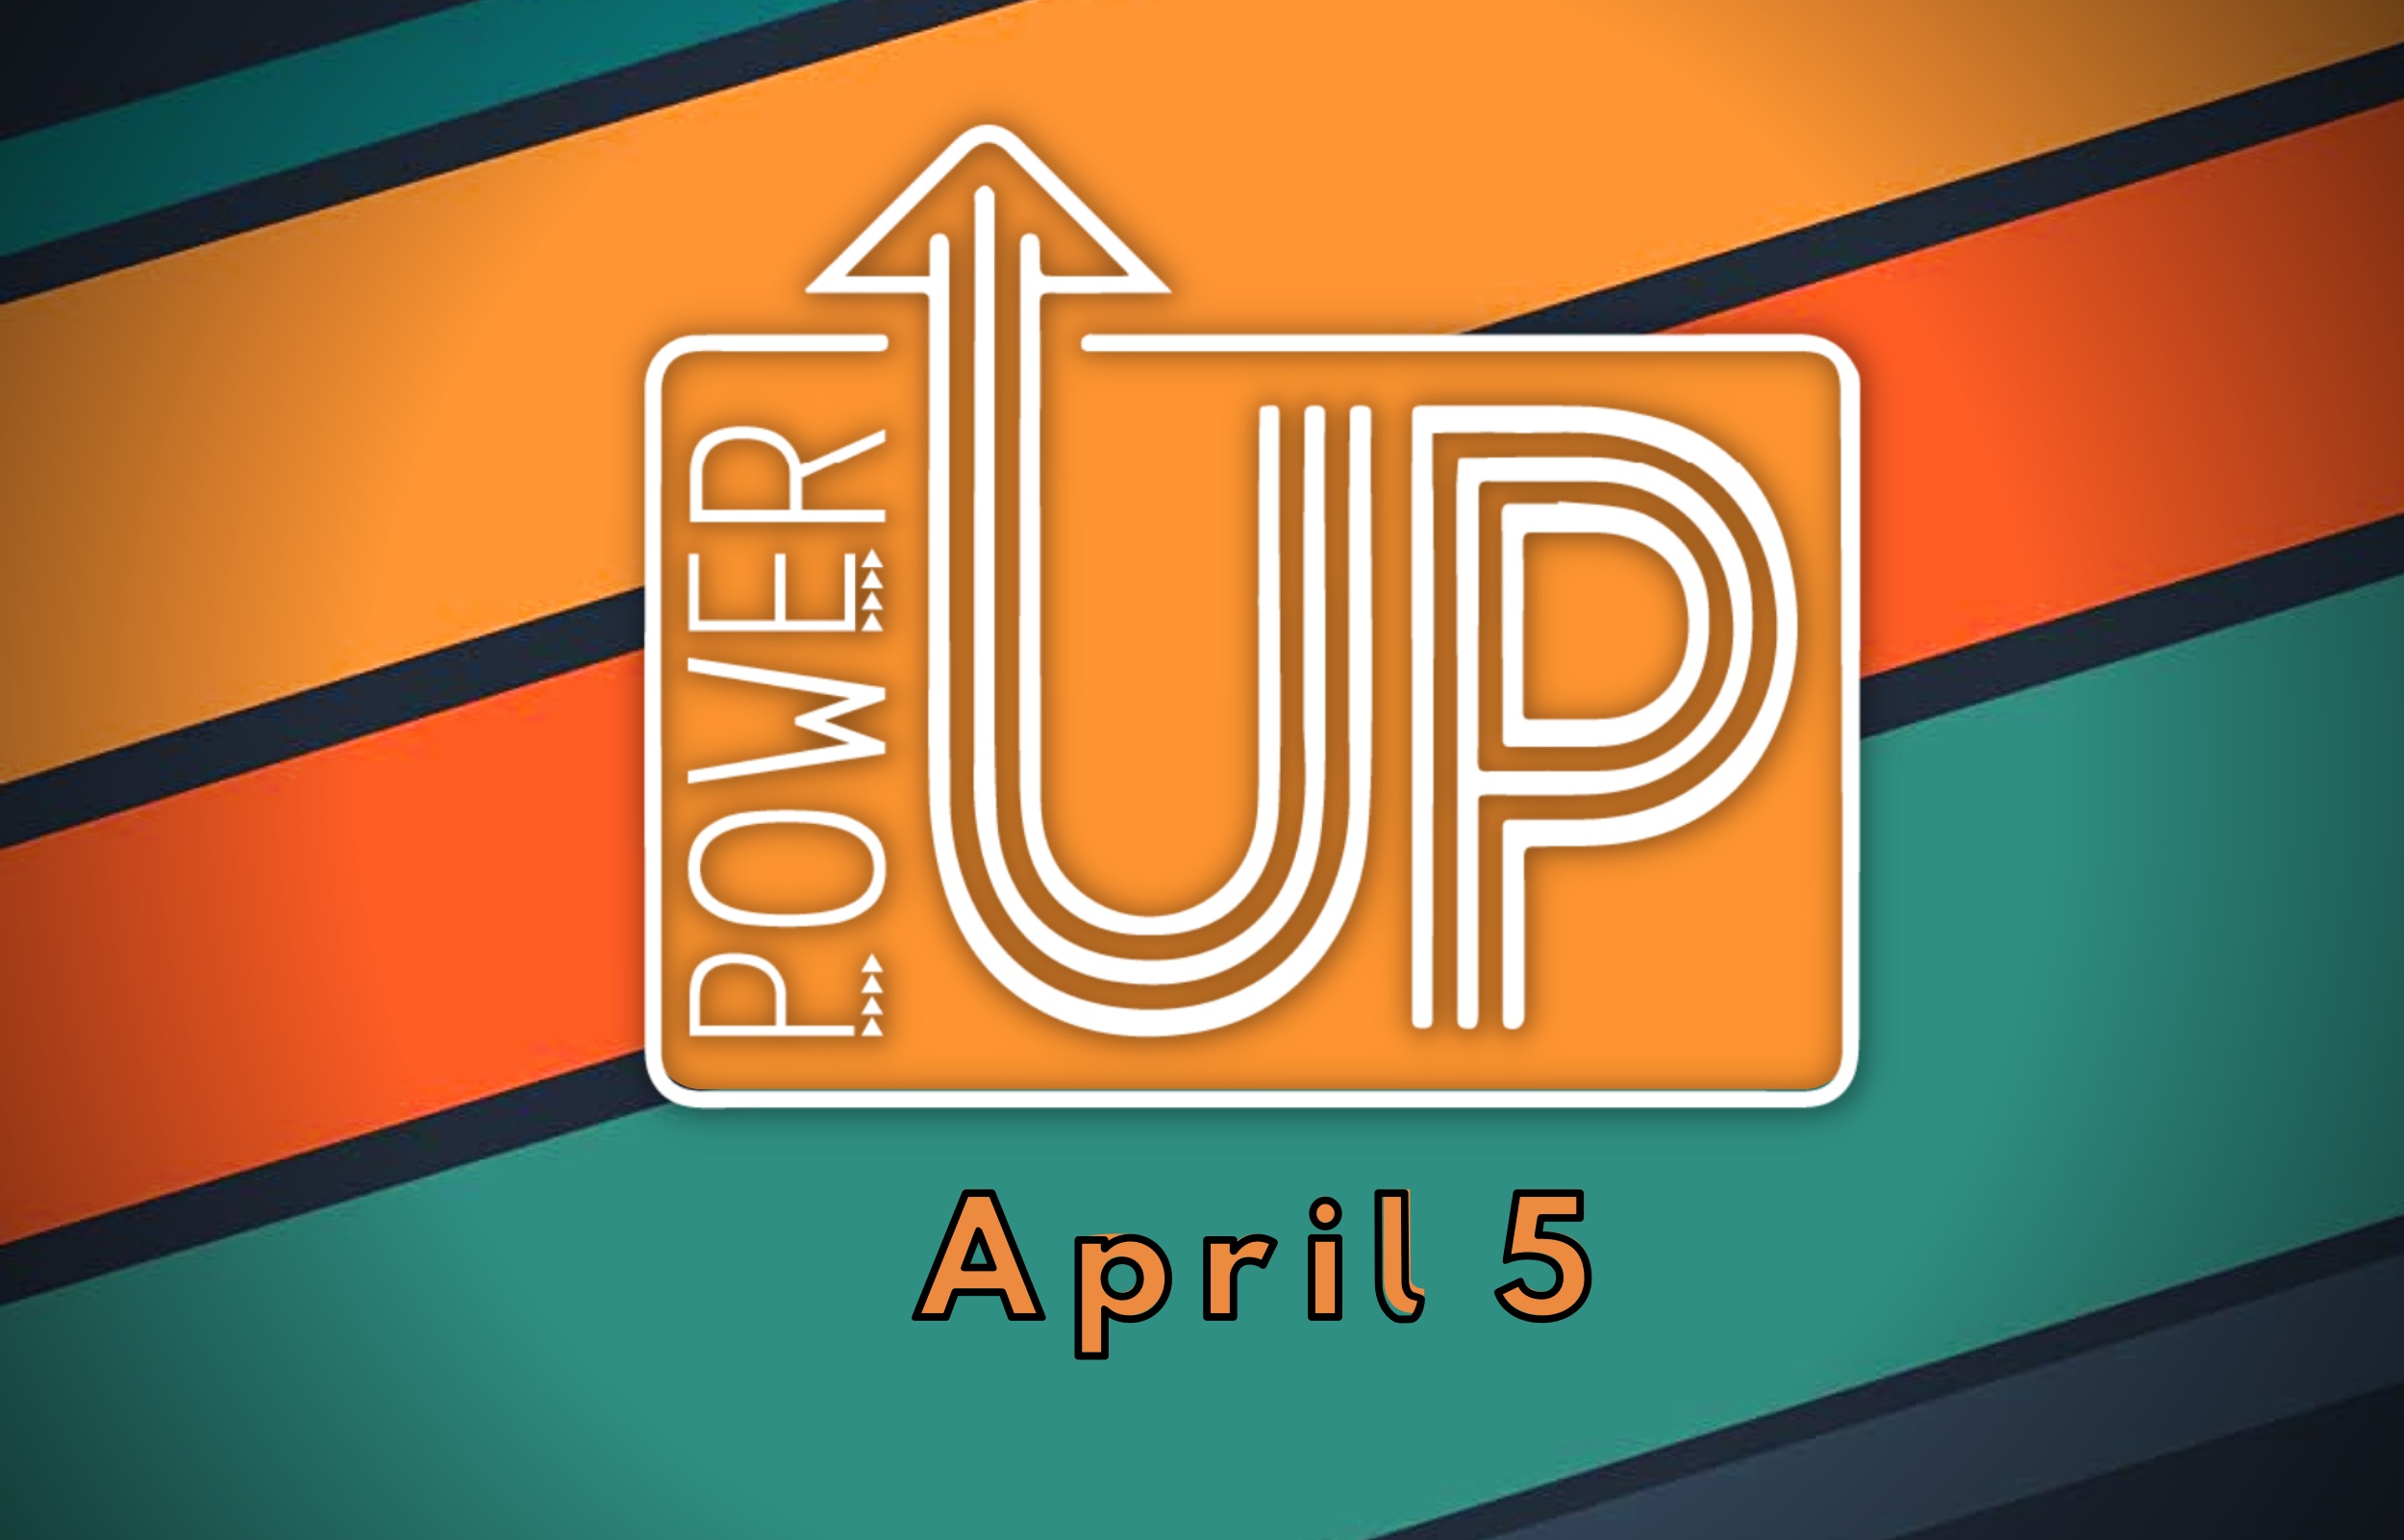 PowerUp - April image